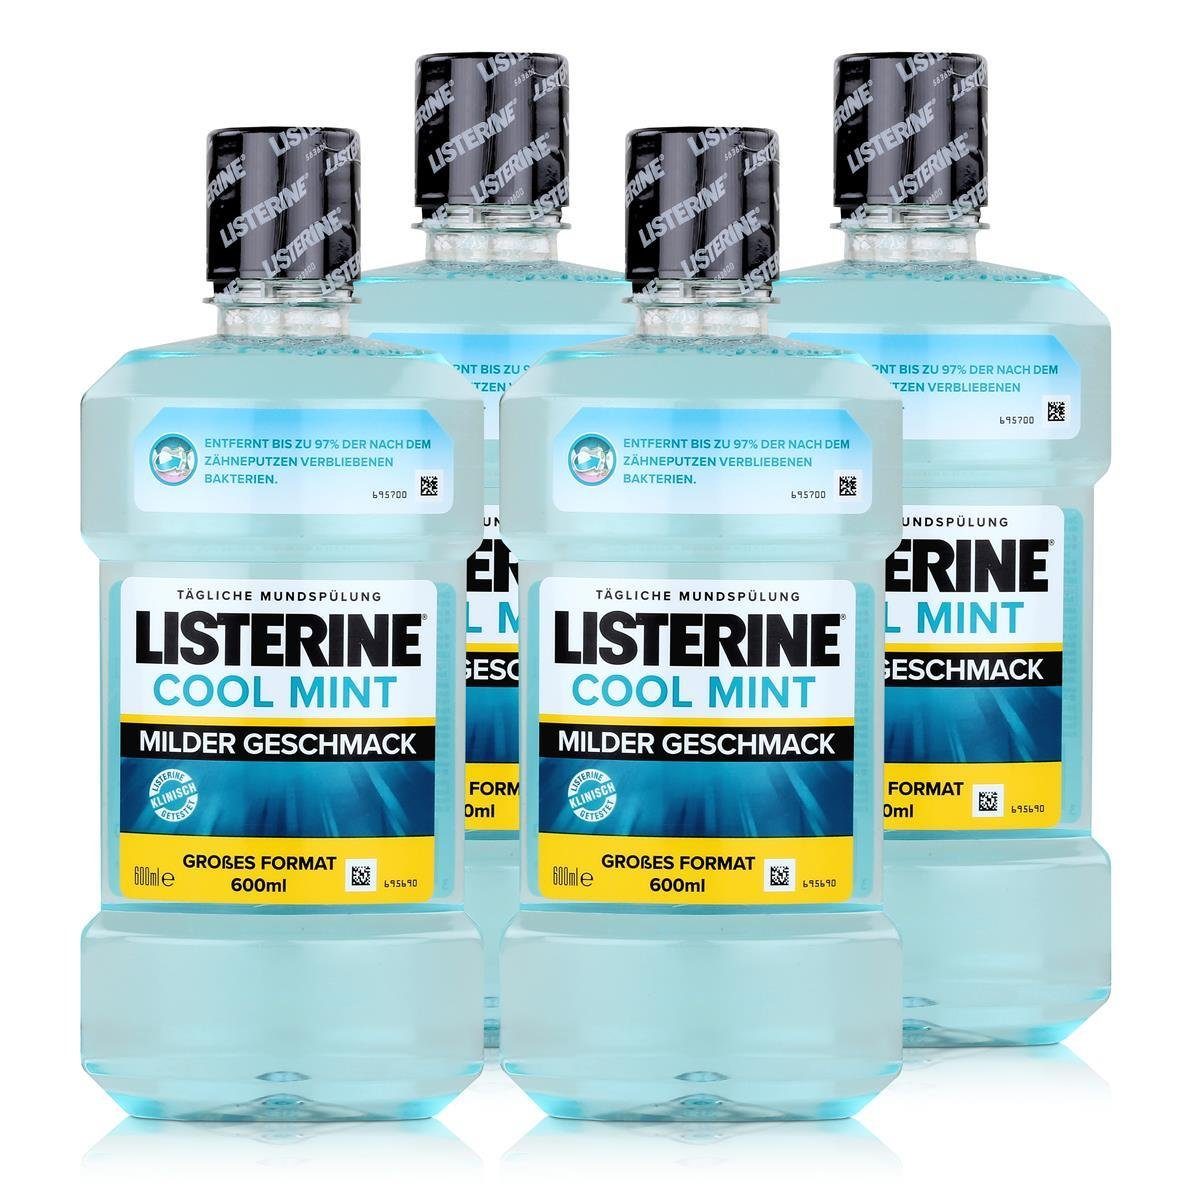 Listerine Mundspülung, Listerine Cool Mint Mild 600ml - Für Kinder ab sechs  Jahren geeignet, Stärkt die Zähne mit 220 ppm Fluorid gegen Karies